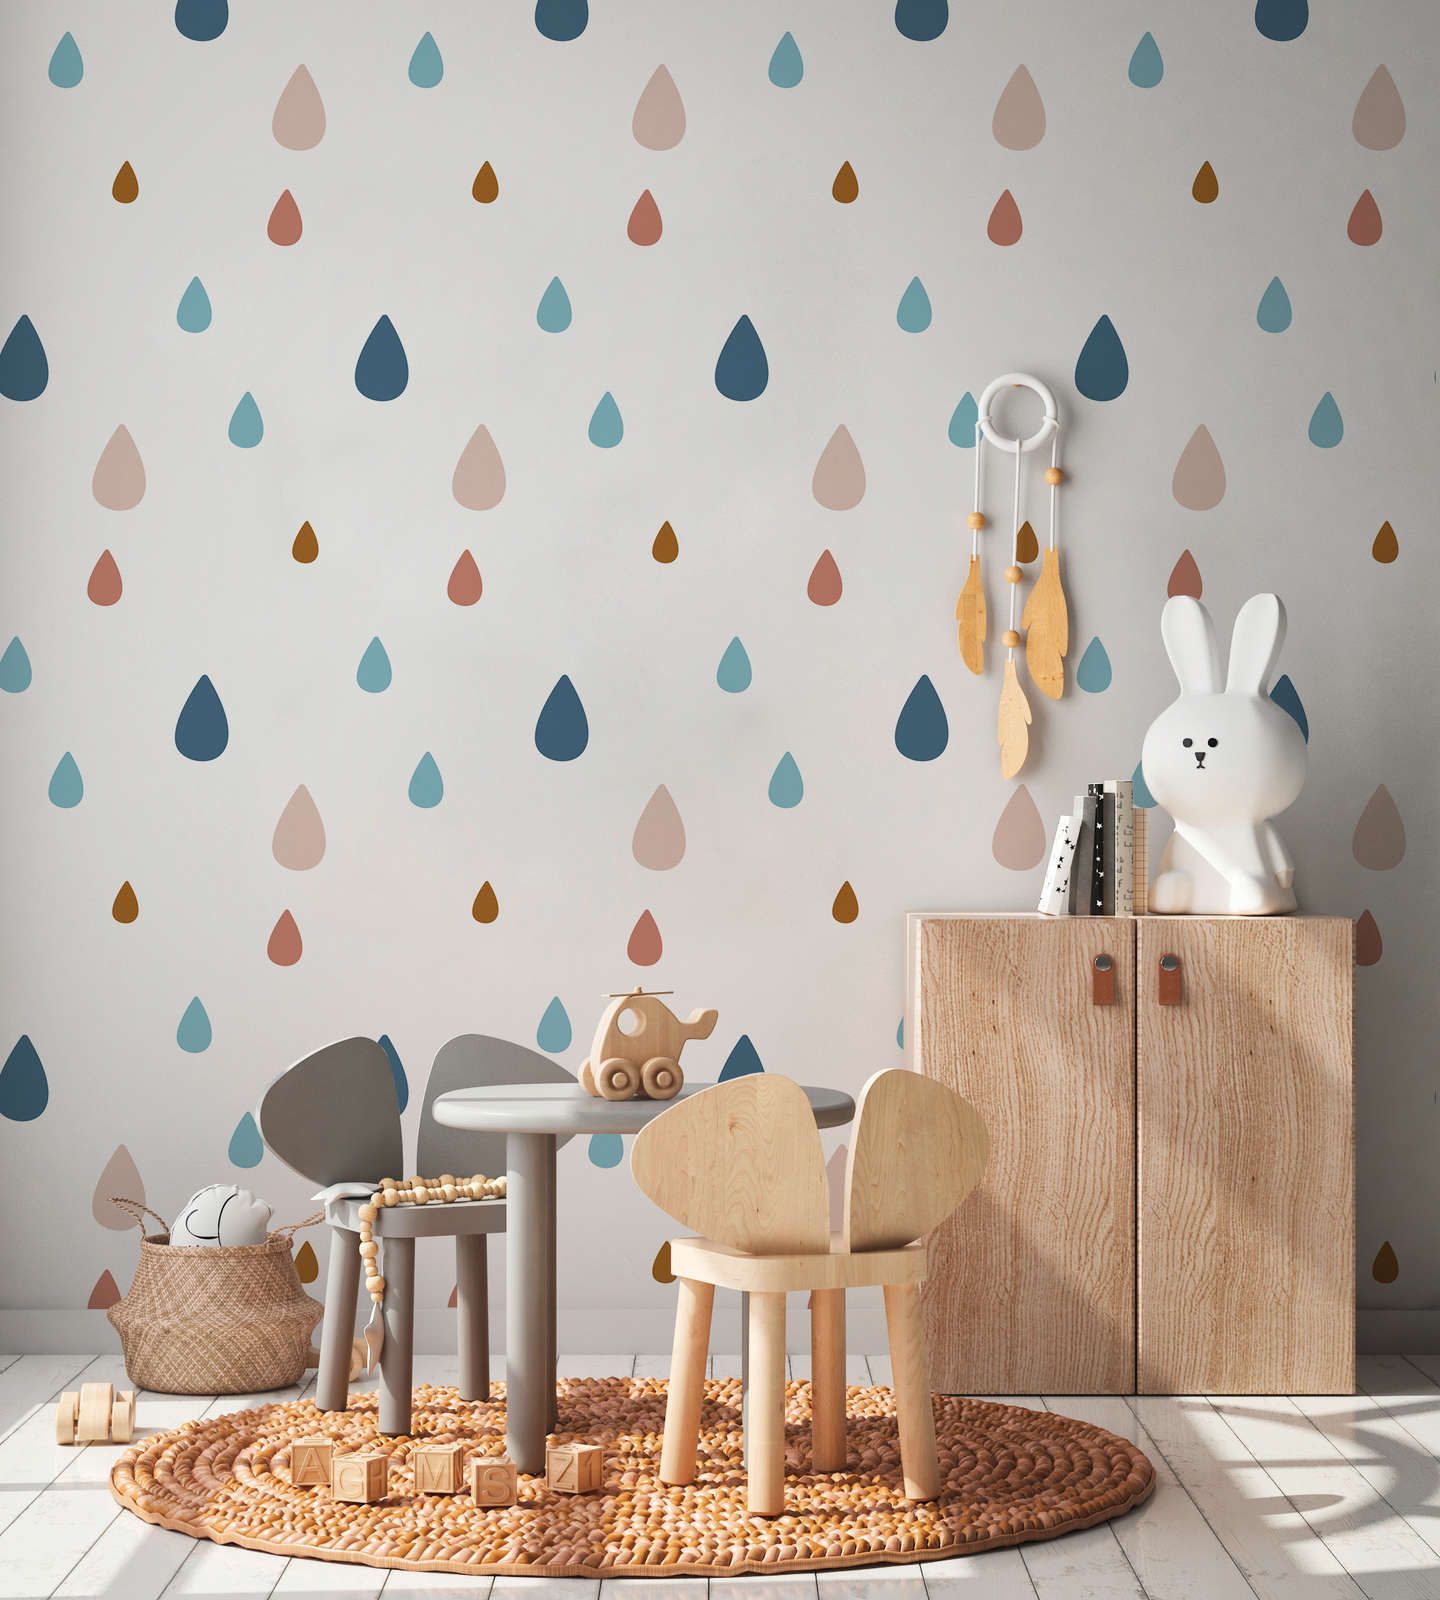             Fototapete fürs Kinderzimmer mit bunten Wassertropfen – Glattes & leicht glänzendes Vlies
        